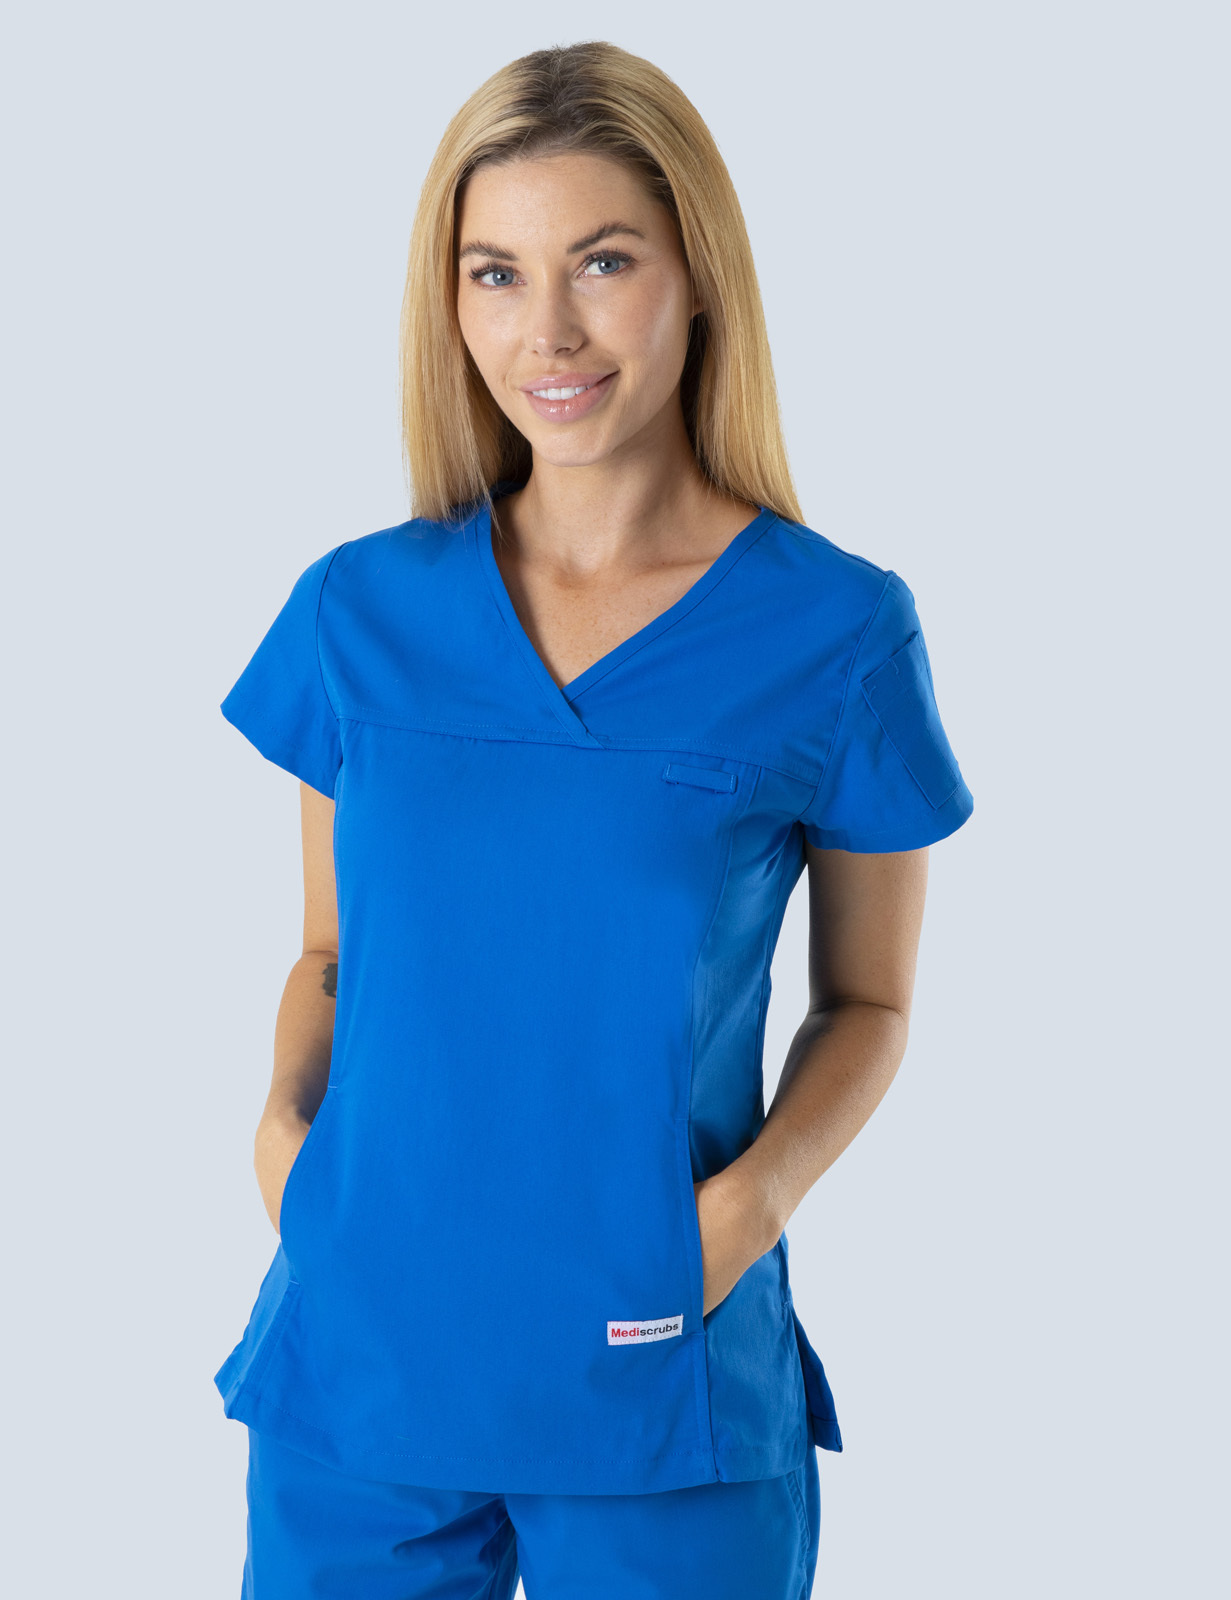 Queensland Children's Hospital Emergency Department Doctor Uniform Top Bundle (Women's Fit Top in Royal  incl Logos)